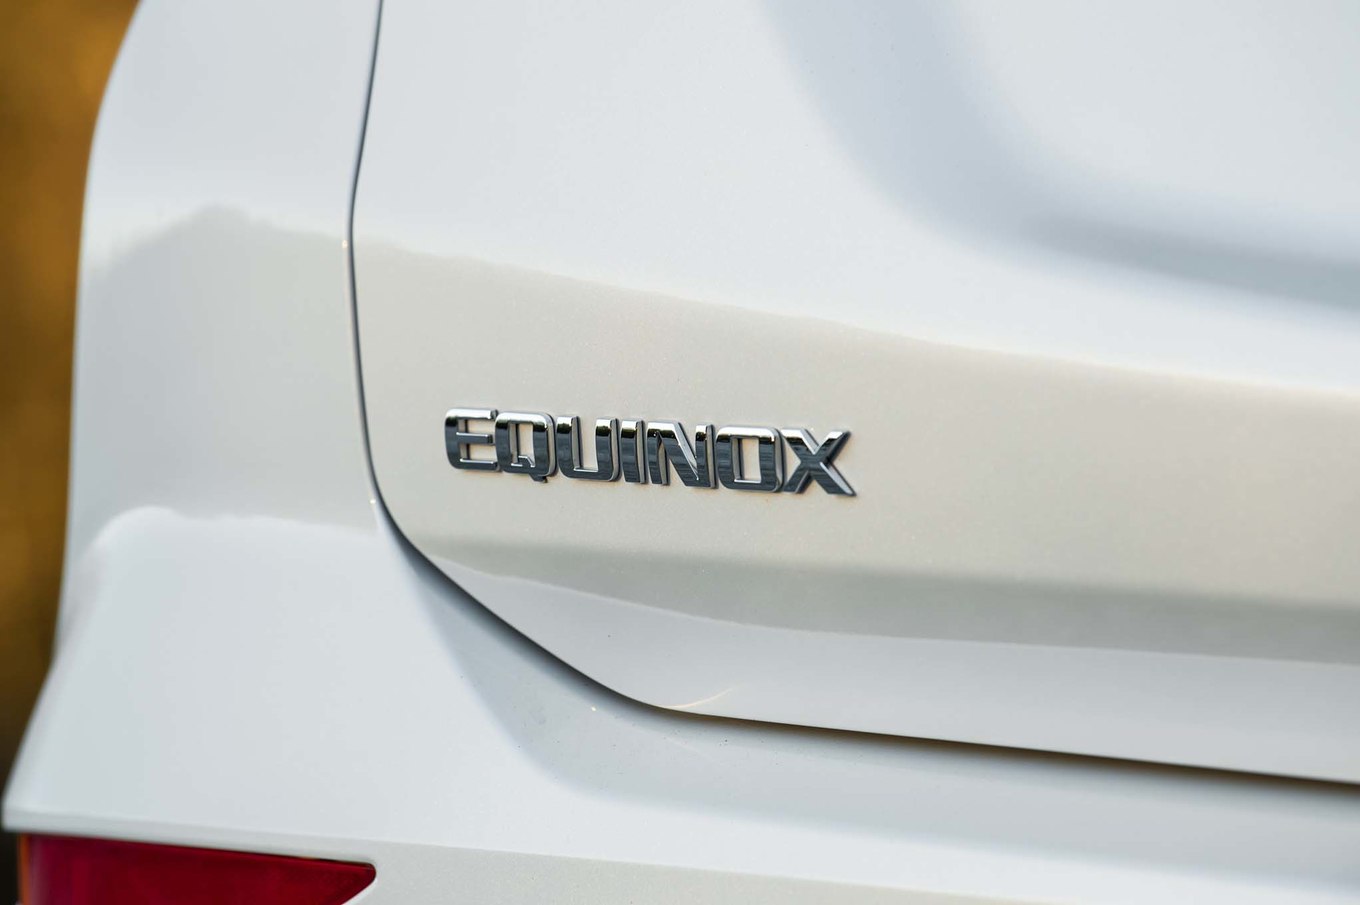 2018 Chevrolet Equinox Badge Wallpapers #31 of 101